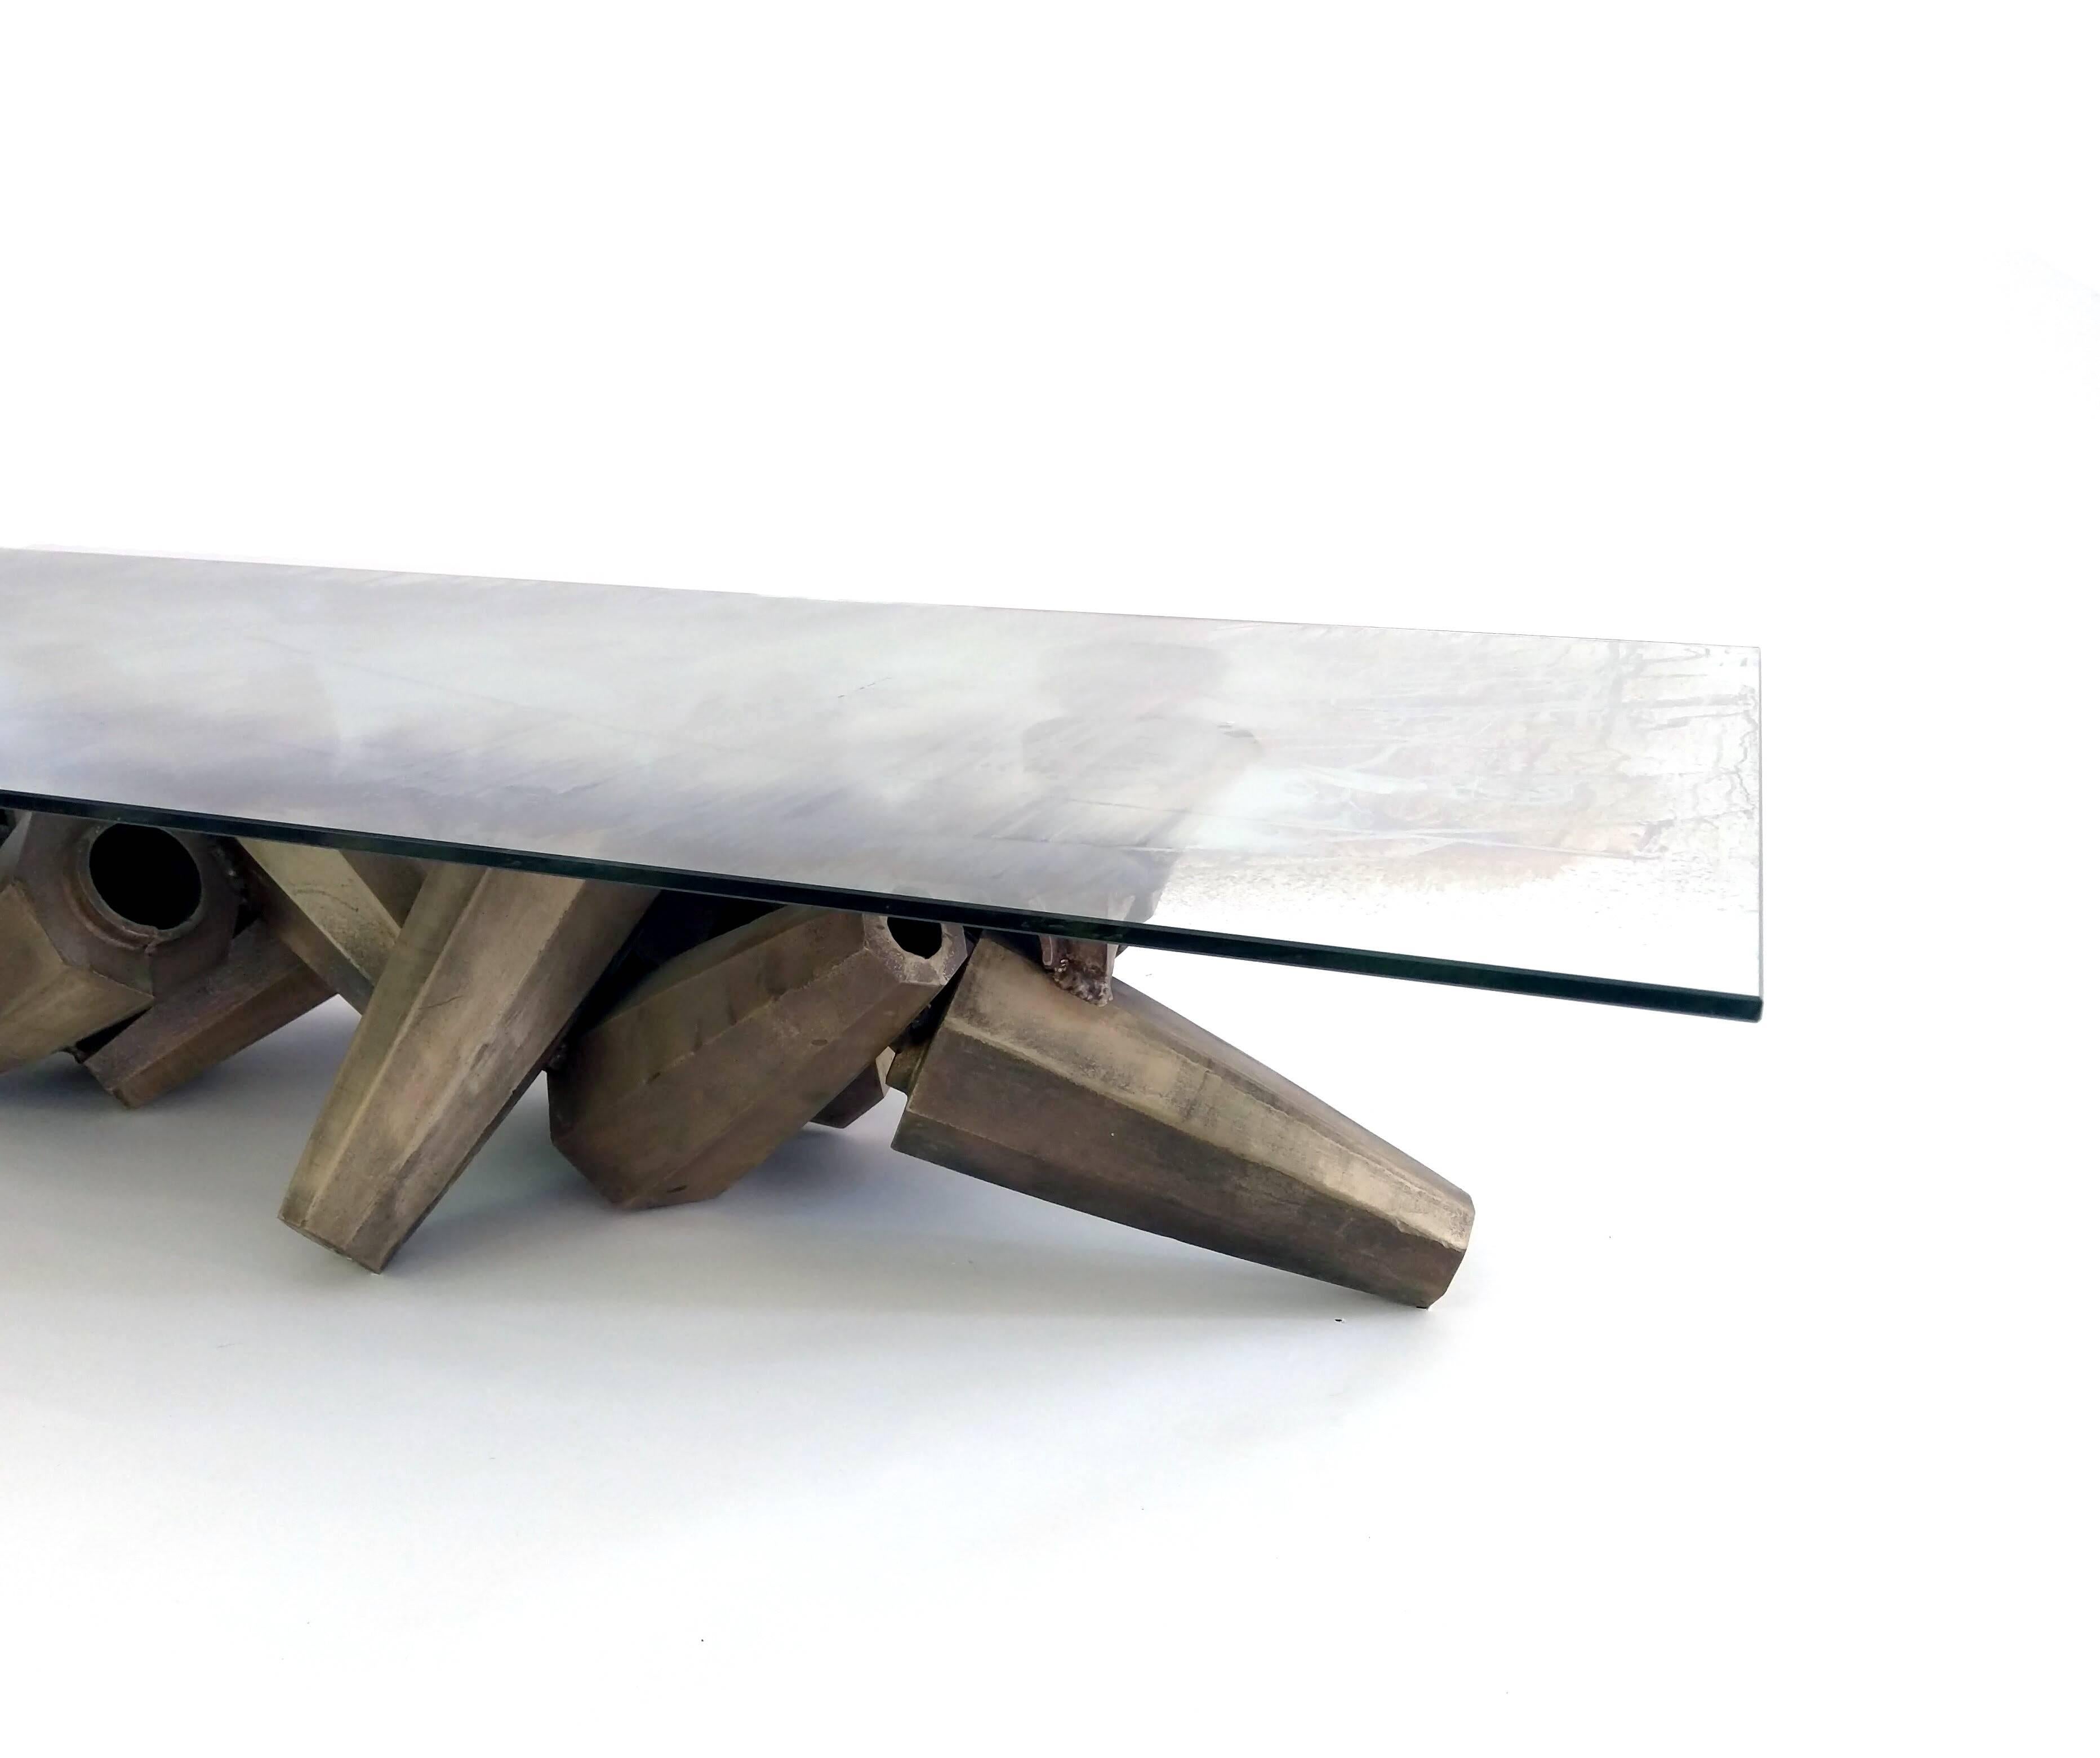 Gregory Nangle
Chaos-Tabelle, 2015-18
Versilbertes Glas und Siliziumgussbronze
65 x 30 x 12 Zoll

Chaos Table ist ein Couchtisch im brutalistischen Stil des Künstlers und Designers Gregory Nangle aus Philadelphia. Er besteht aus einer verschmolzenen